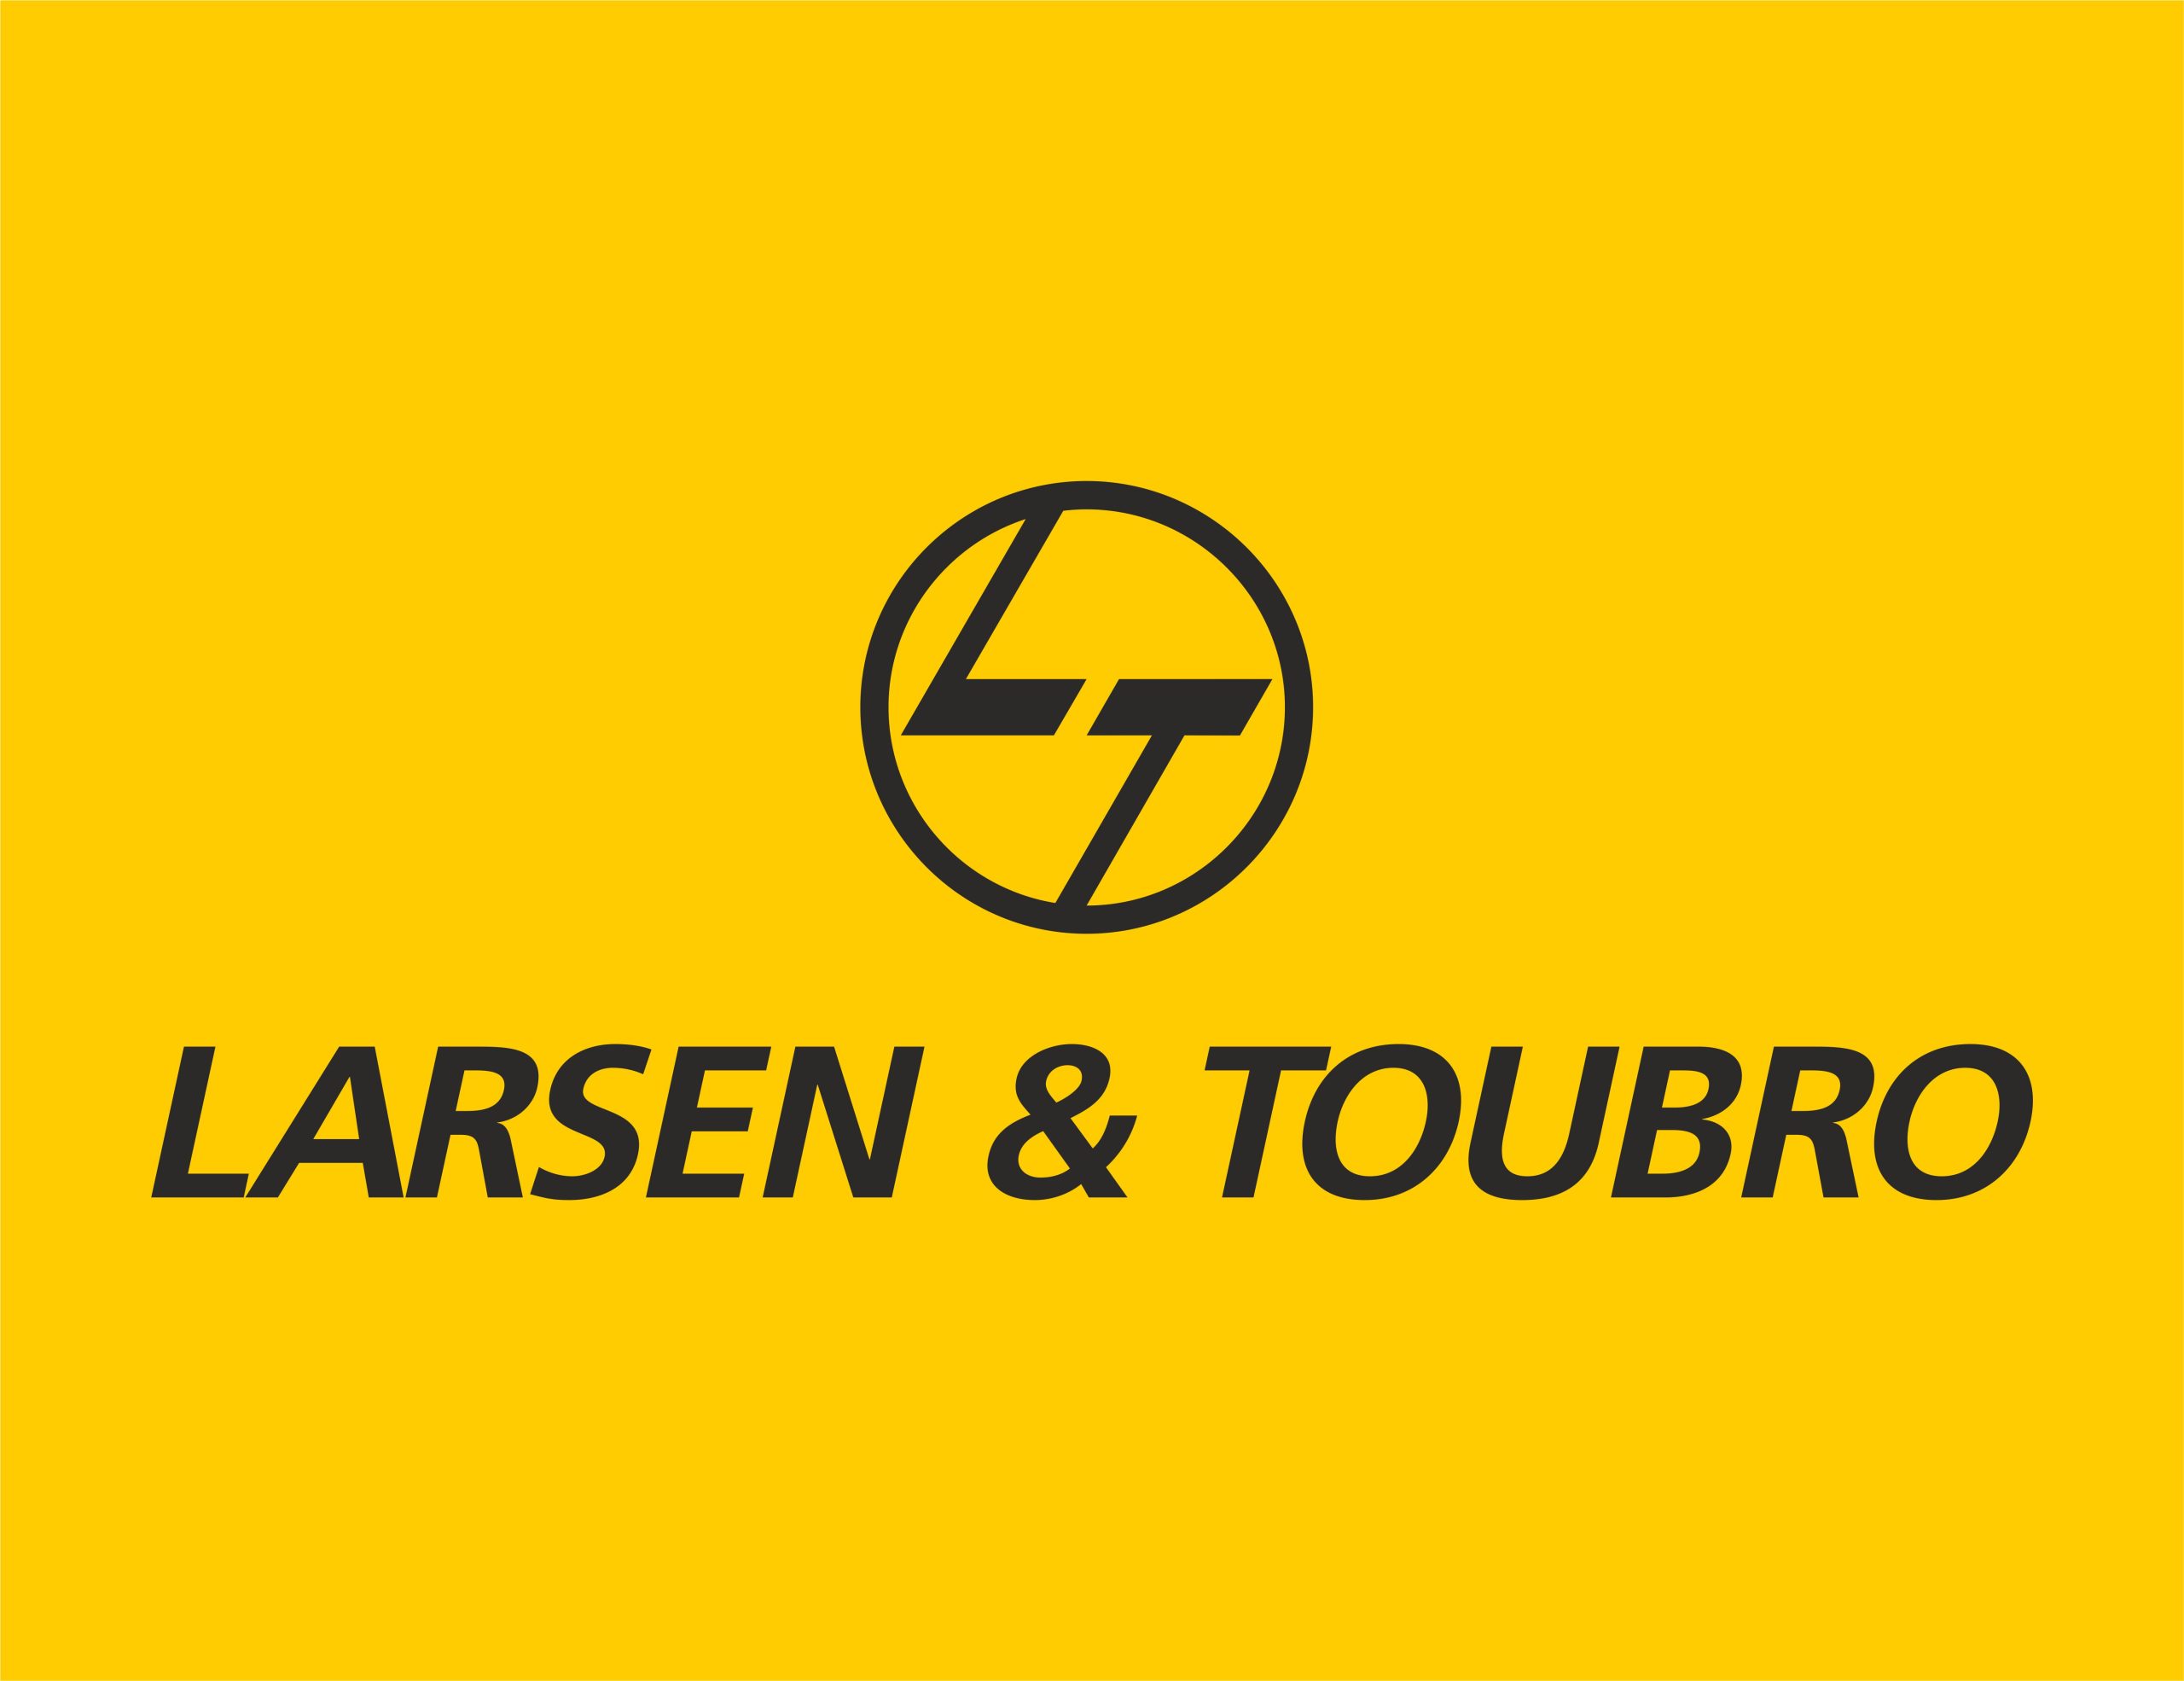 LARSEN & TOUBRO